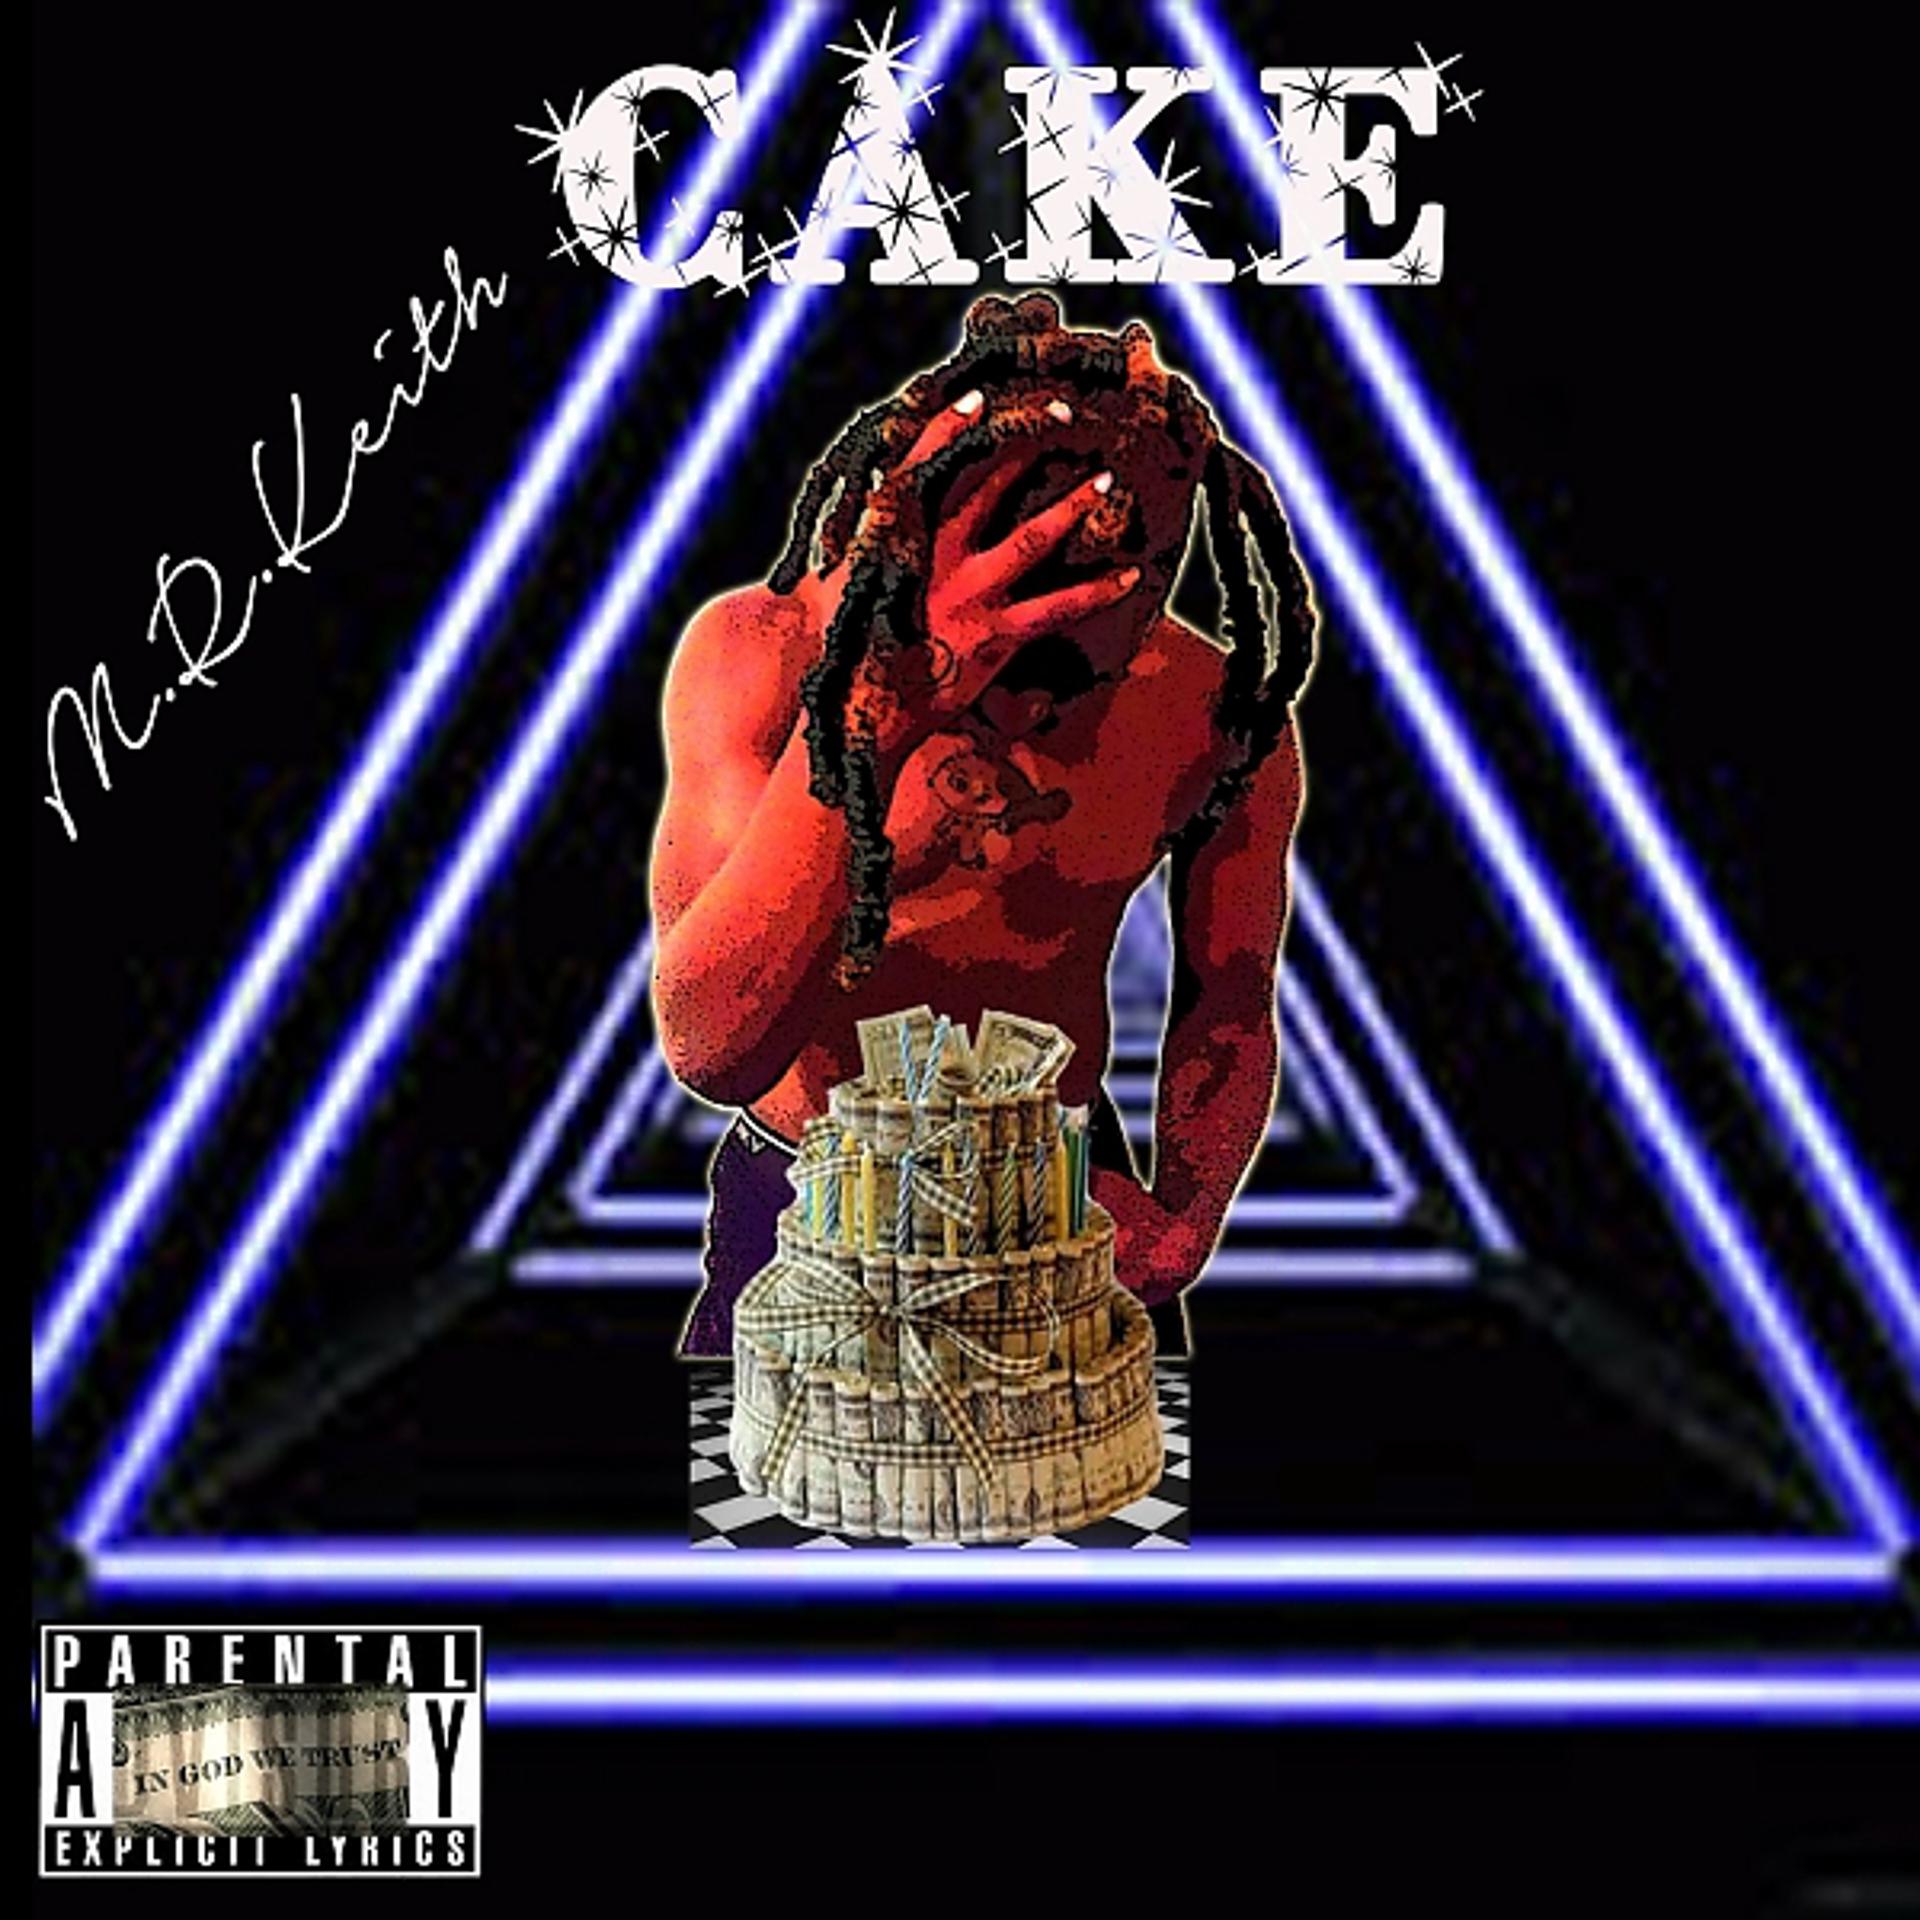 Постер альбома Cake